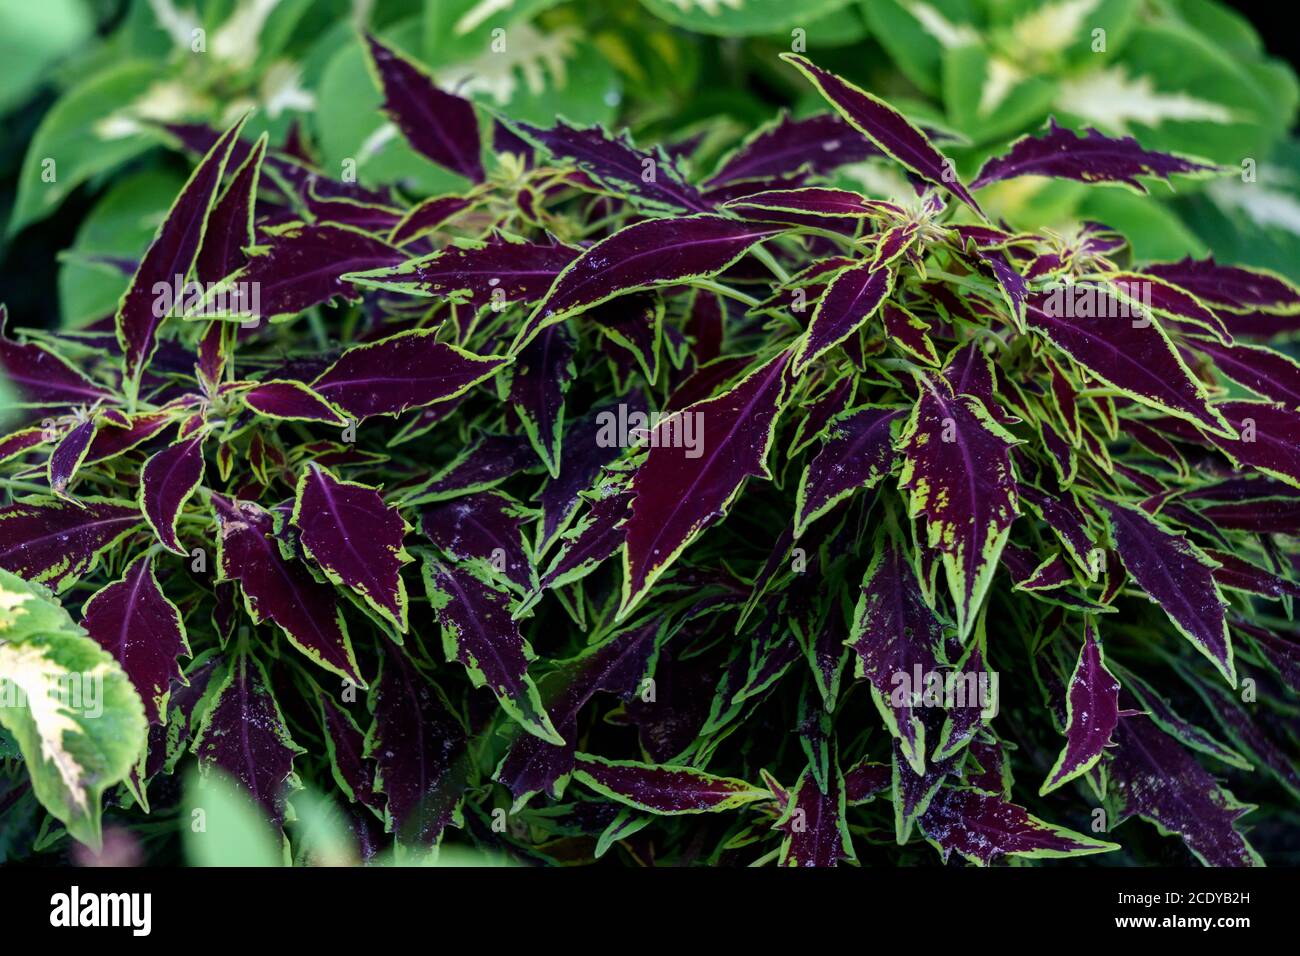 Leuchtend violett grüne Blätter von dekorativen Brennnessel im Garten. Stockfoto